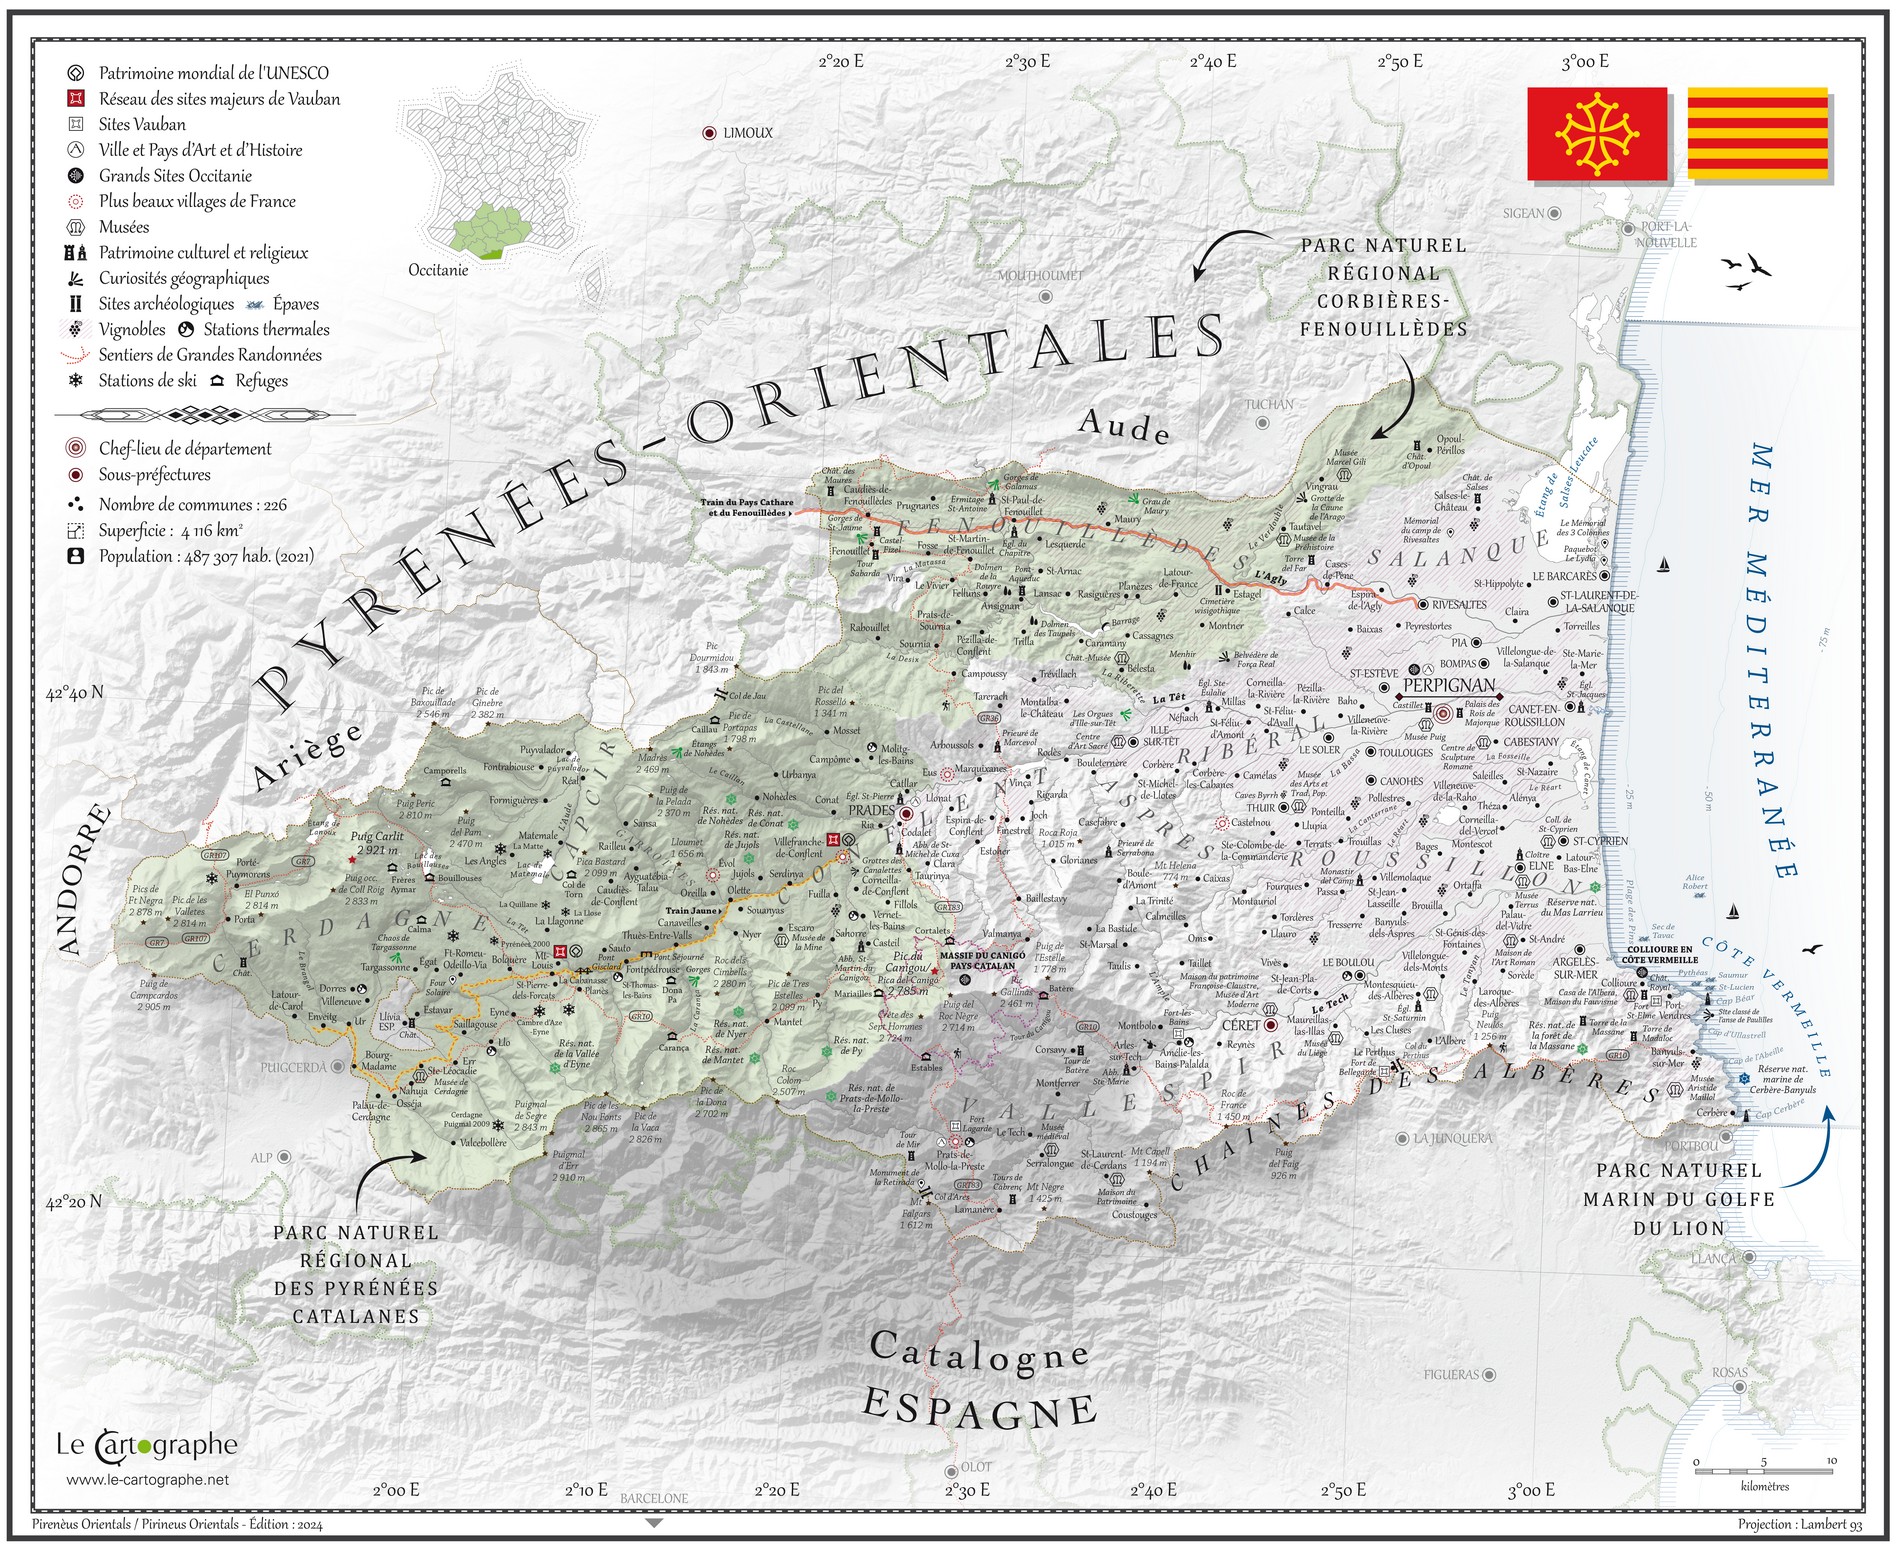 Les Pyrénées-Orientales - Poster